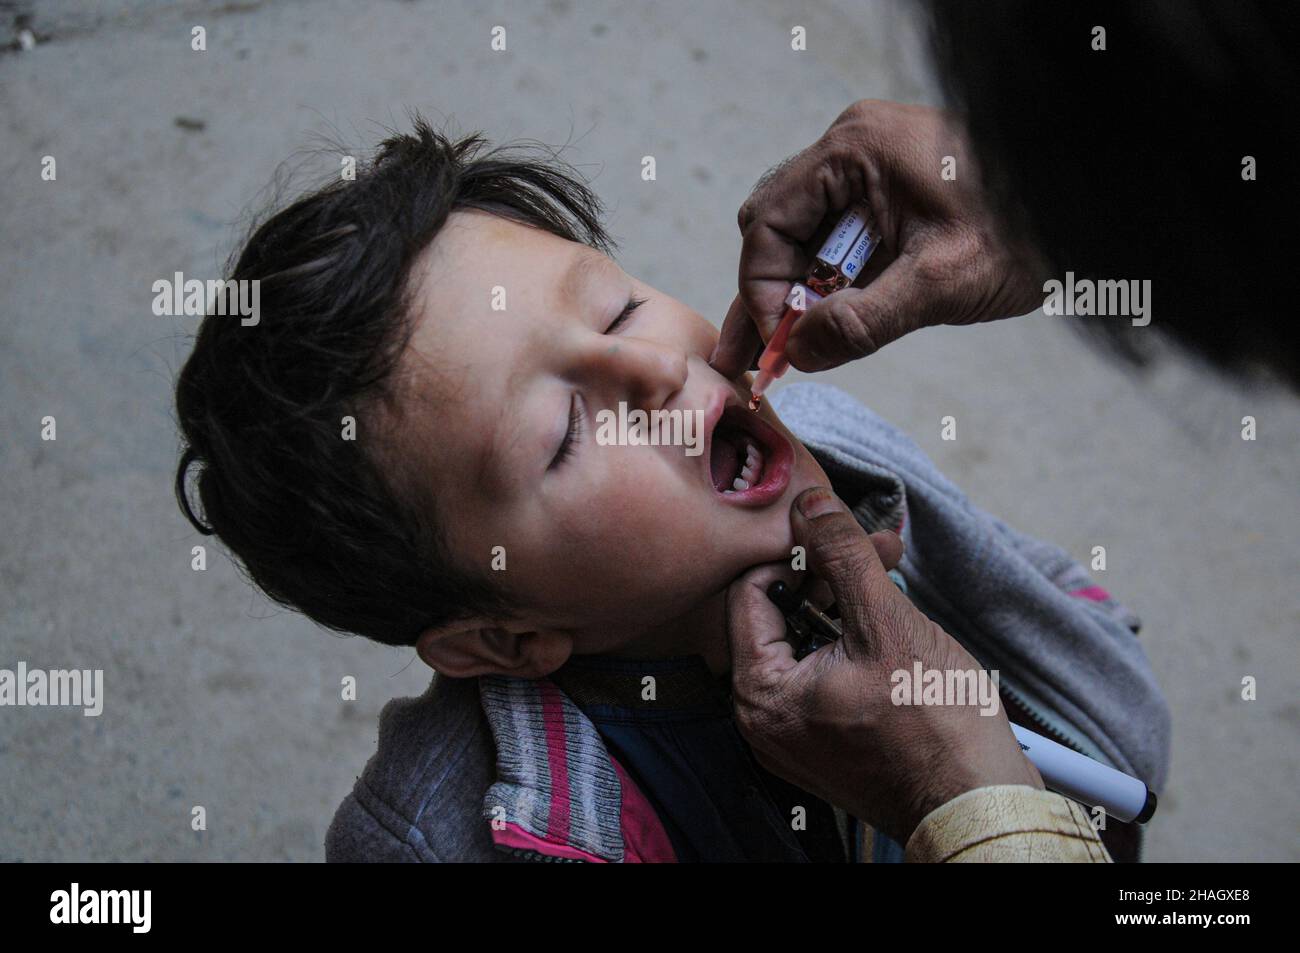 RAWALPINDI, Pakistán - diciembre de 13: Un trabajador de salud administra la vacuna contra la poliomielitis a un niño durante una campaña contra la poliomielitis en Rawalpindi el 13 de diciembre de 2021 Foto de stock